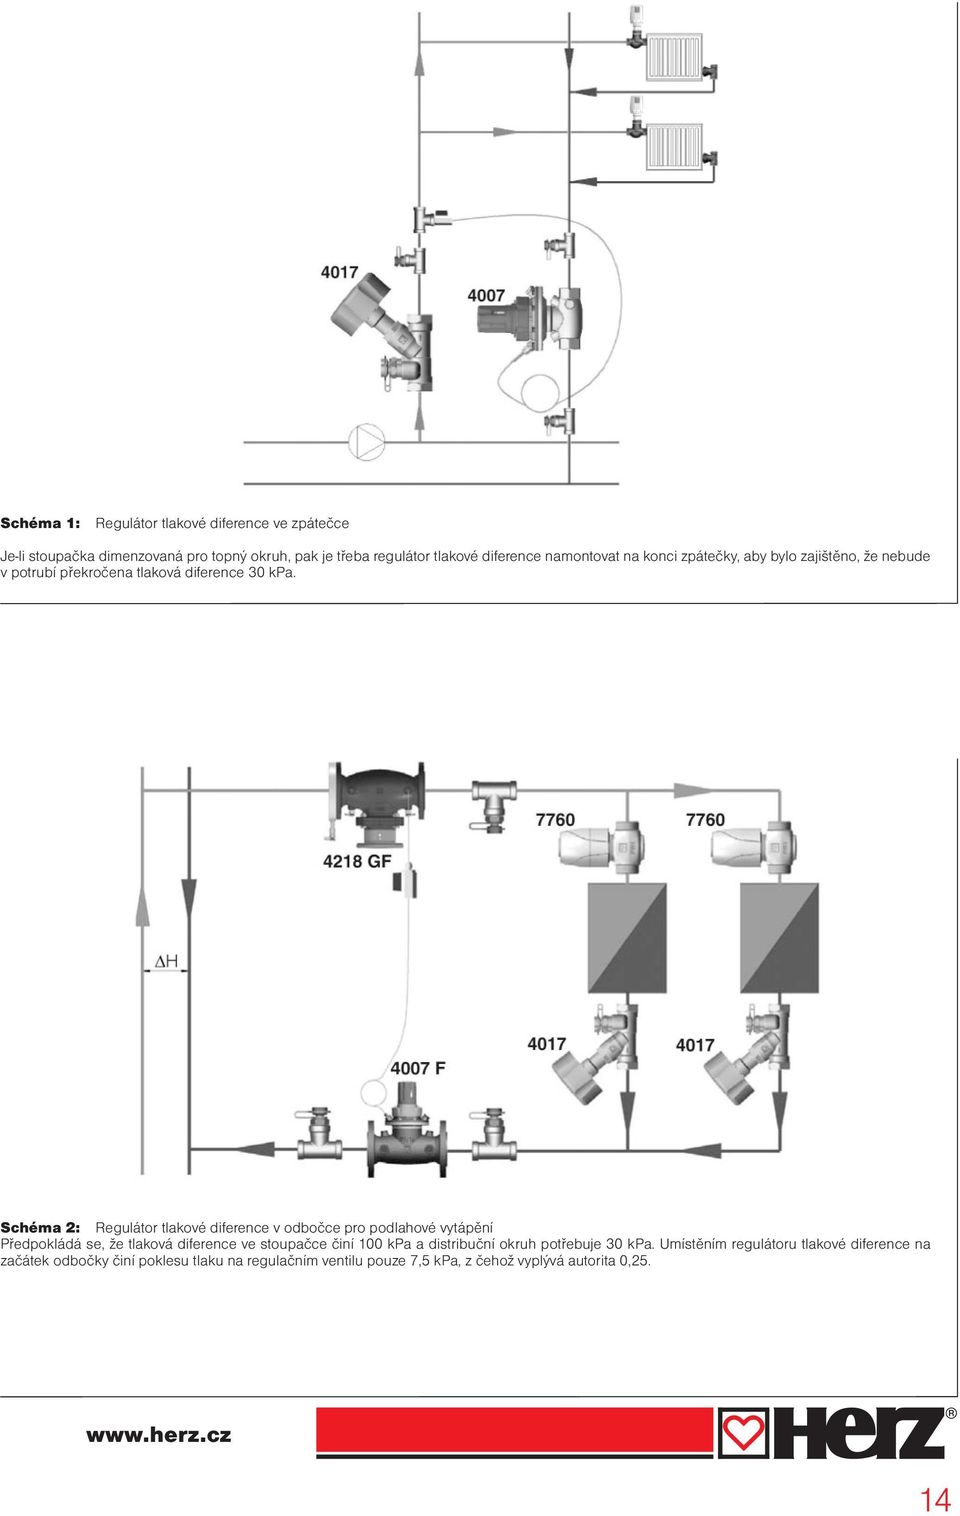 Schéma 2: Regulátor tlakové diference v odbočce pro podlahové vytápění Předpokládá se, že tlaková diference ve stoupačce činí 100 kpa a